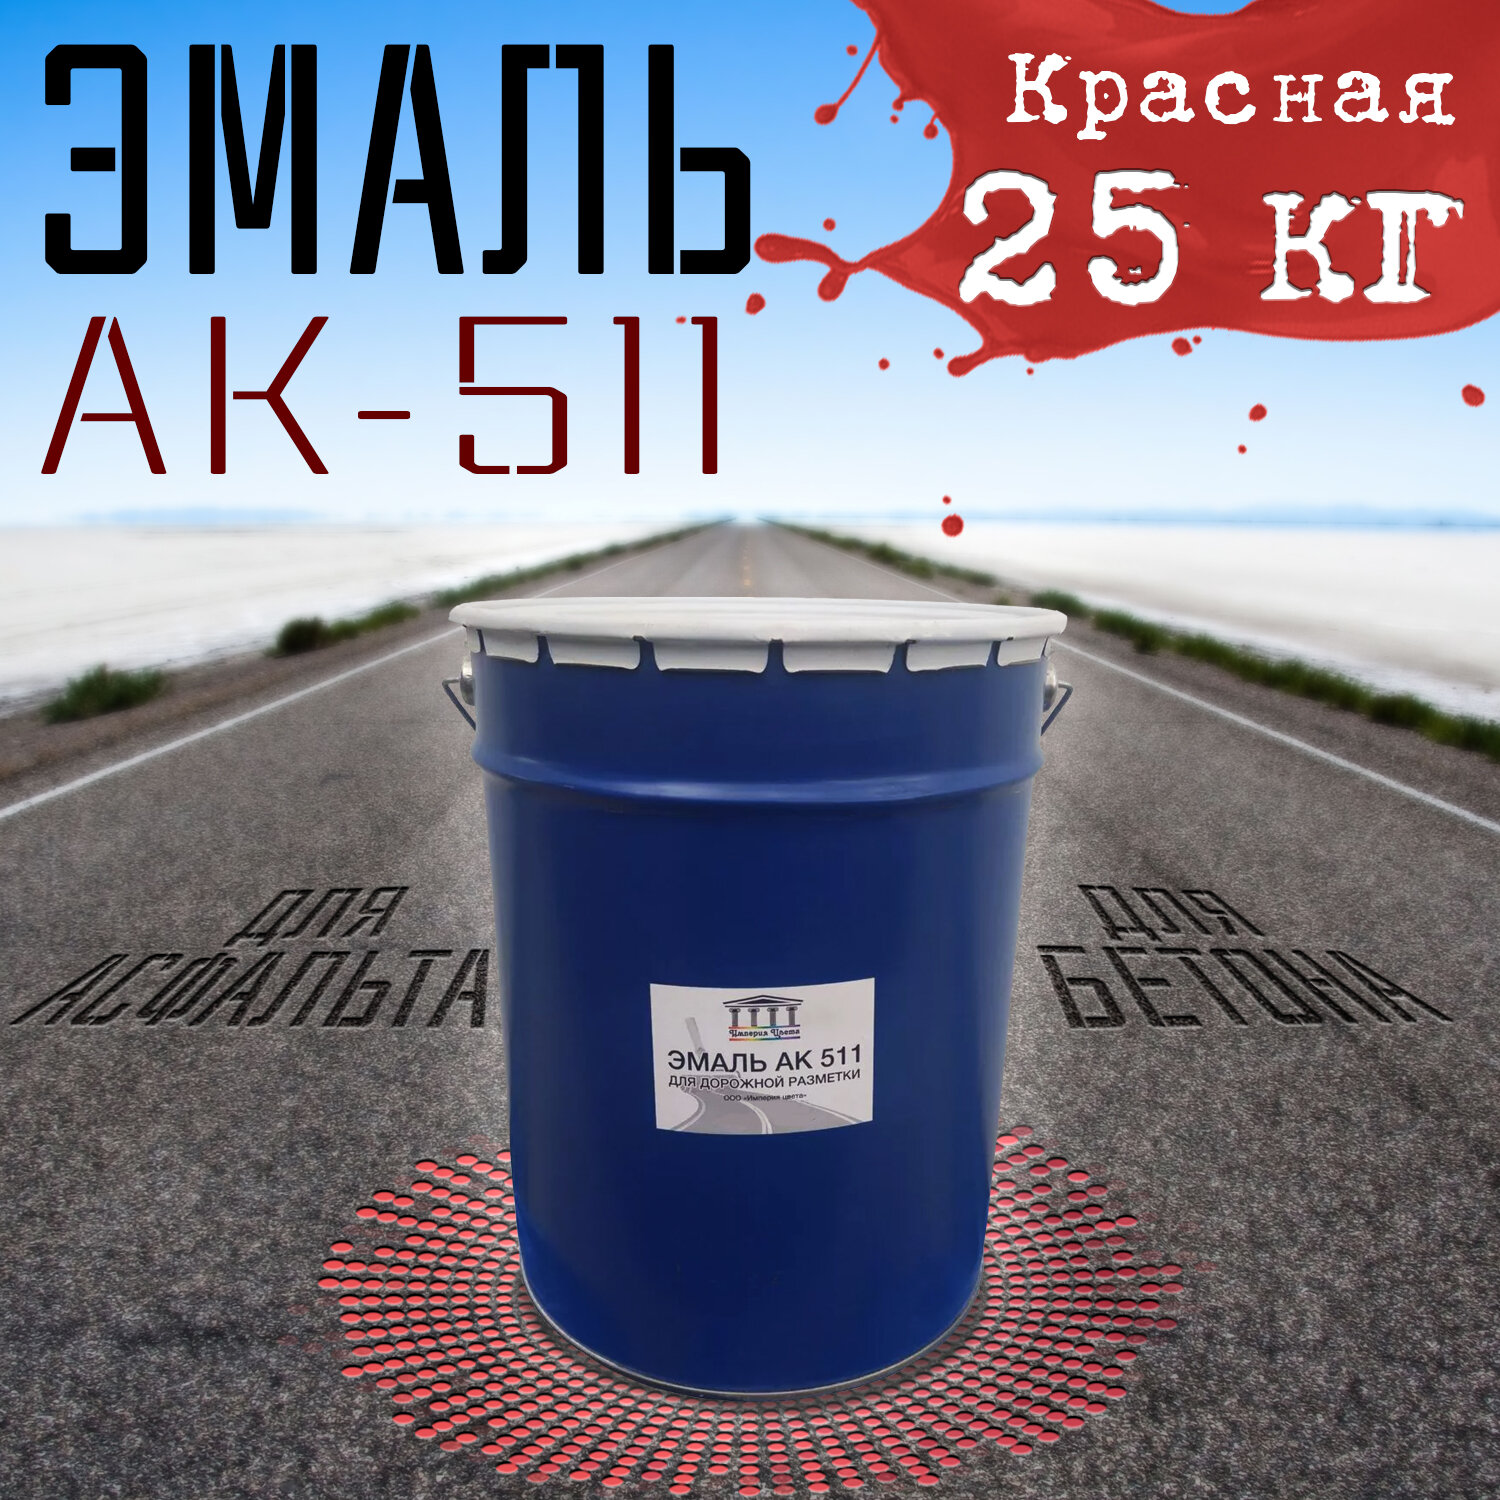 Эмаль АК-511 красная 25 кг Империя Цвета краска специального назначения для дорожной разметки